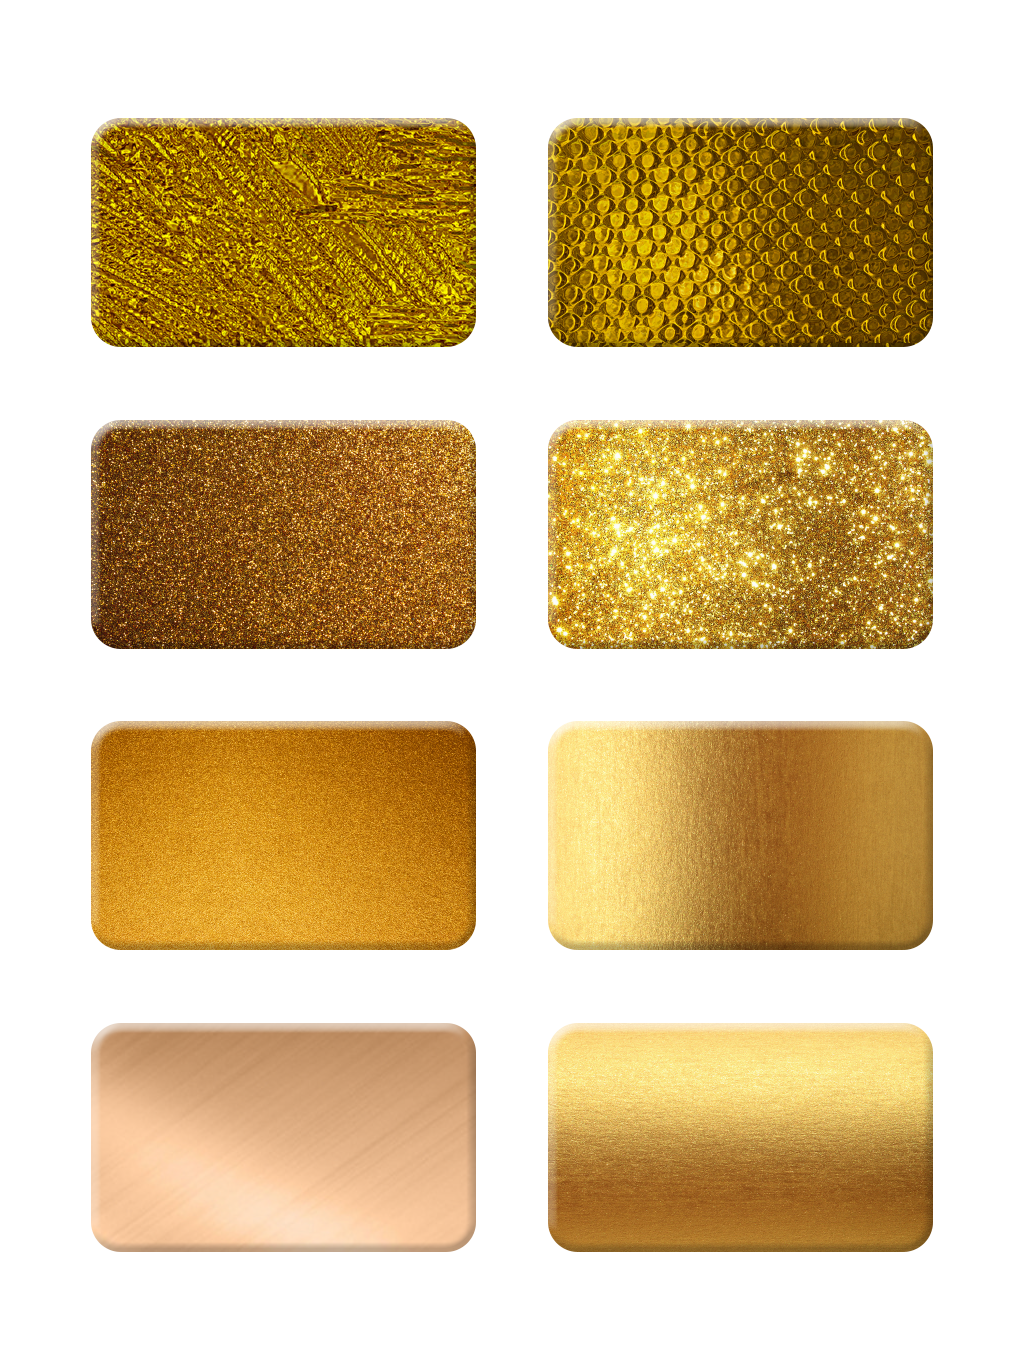 Golden Decoration Background PNG Image